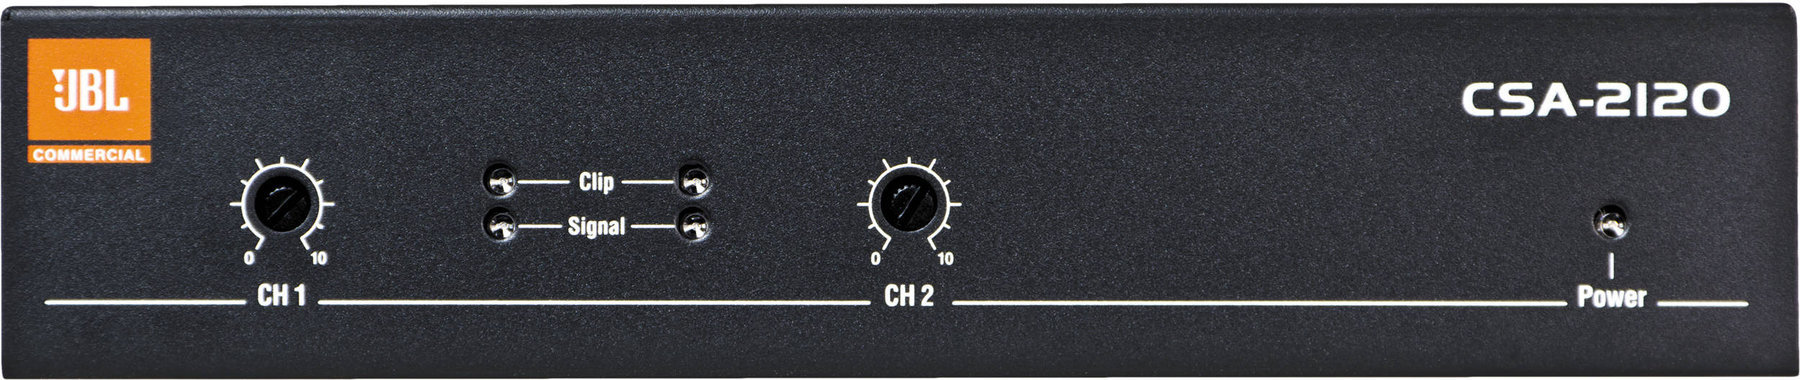 Power amplifier JBL CSA 2120 Power amplifier